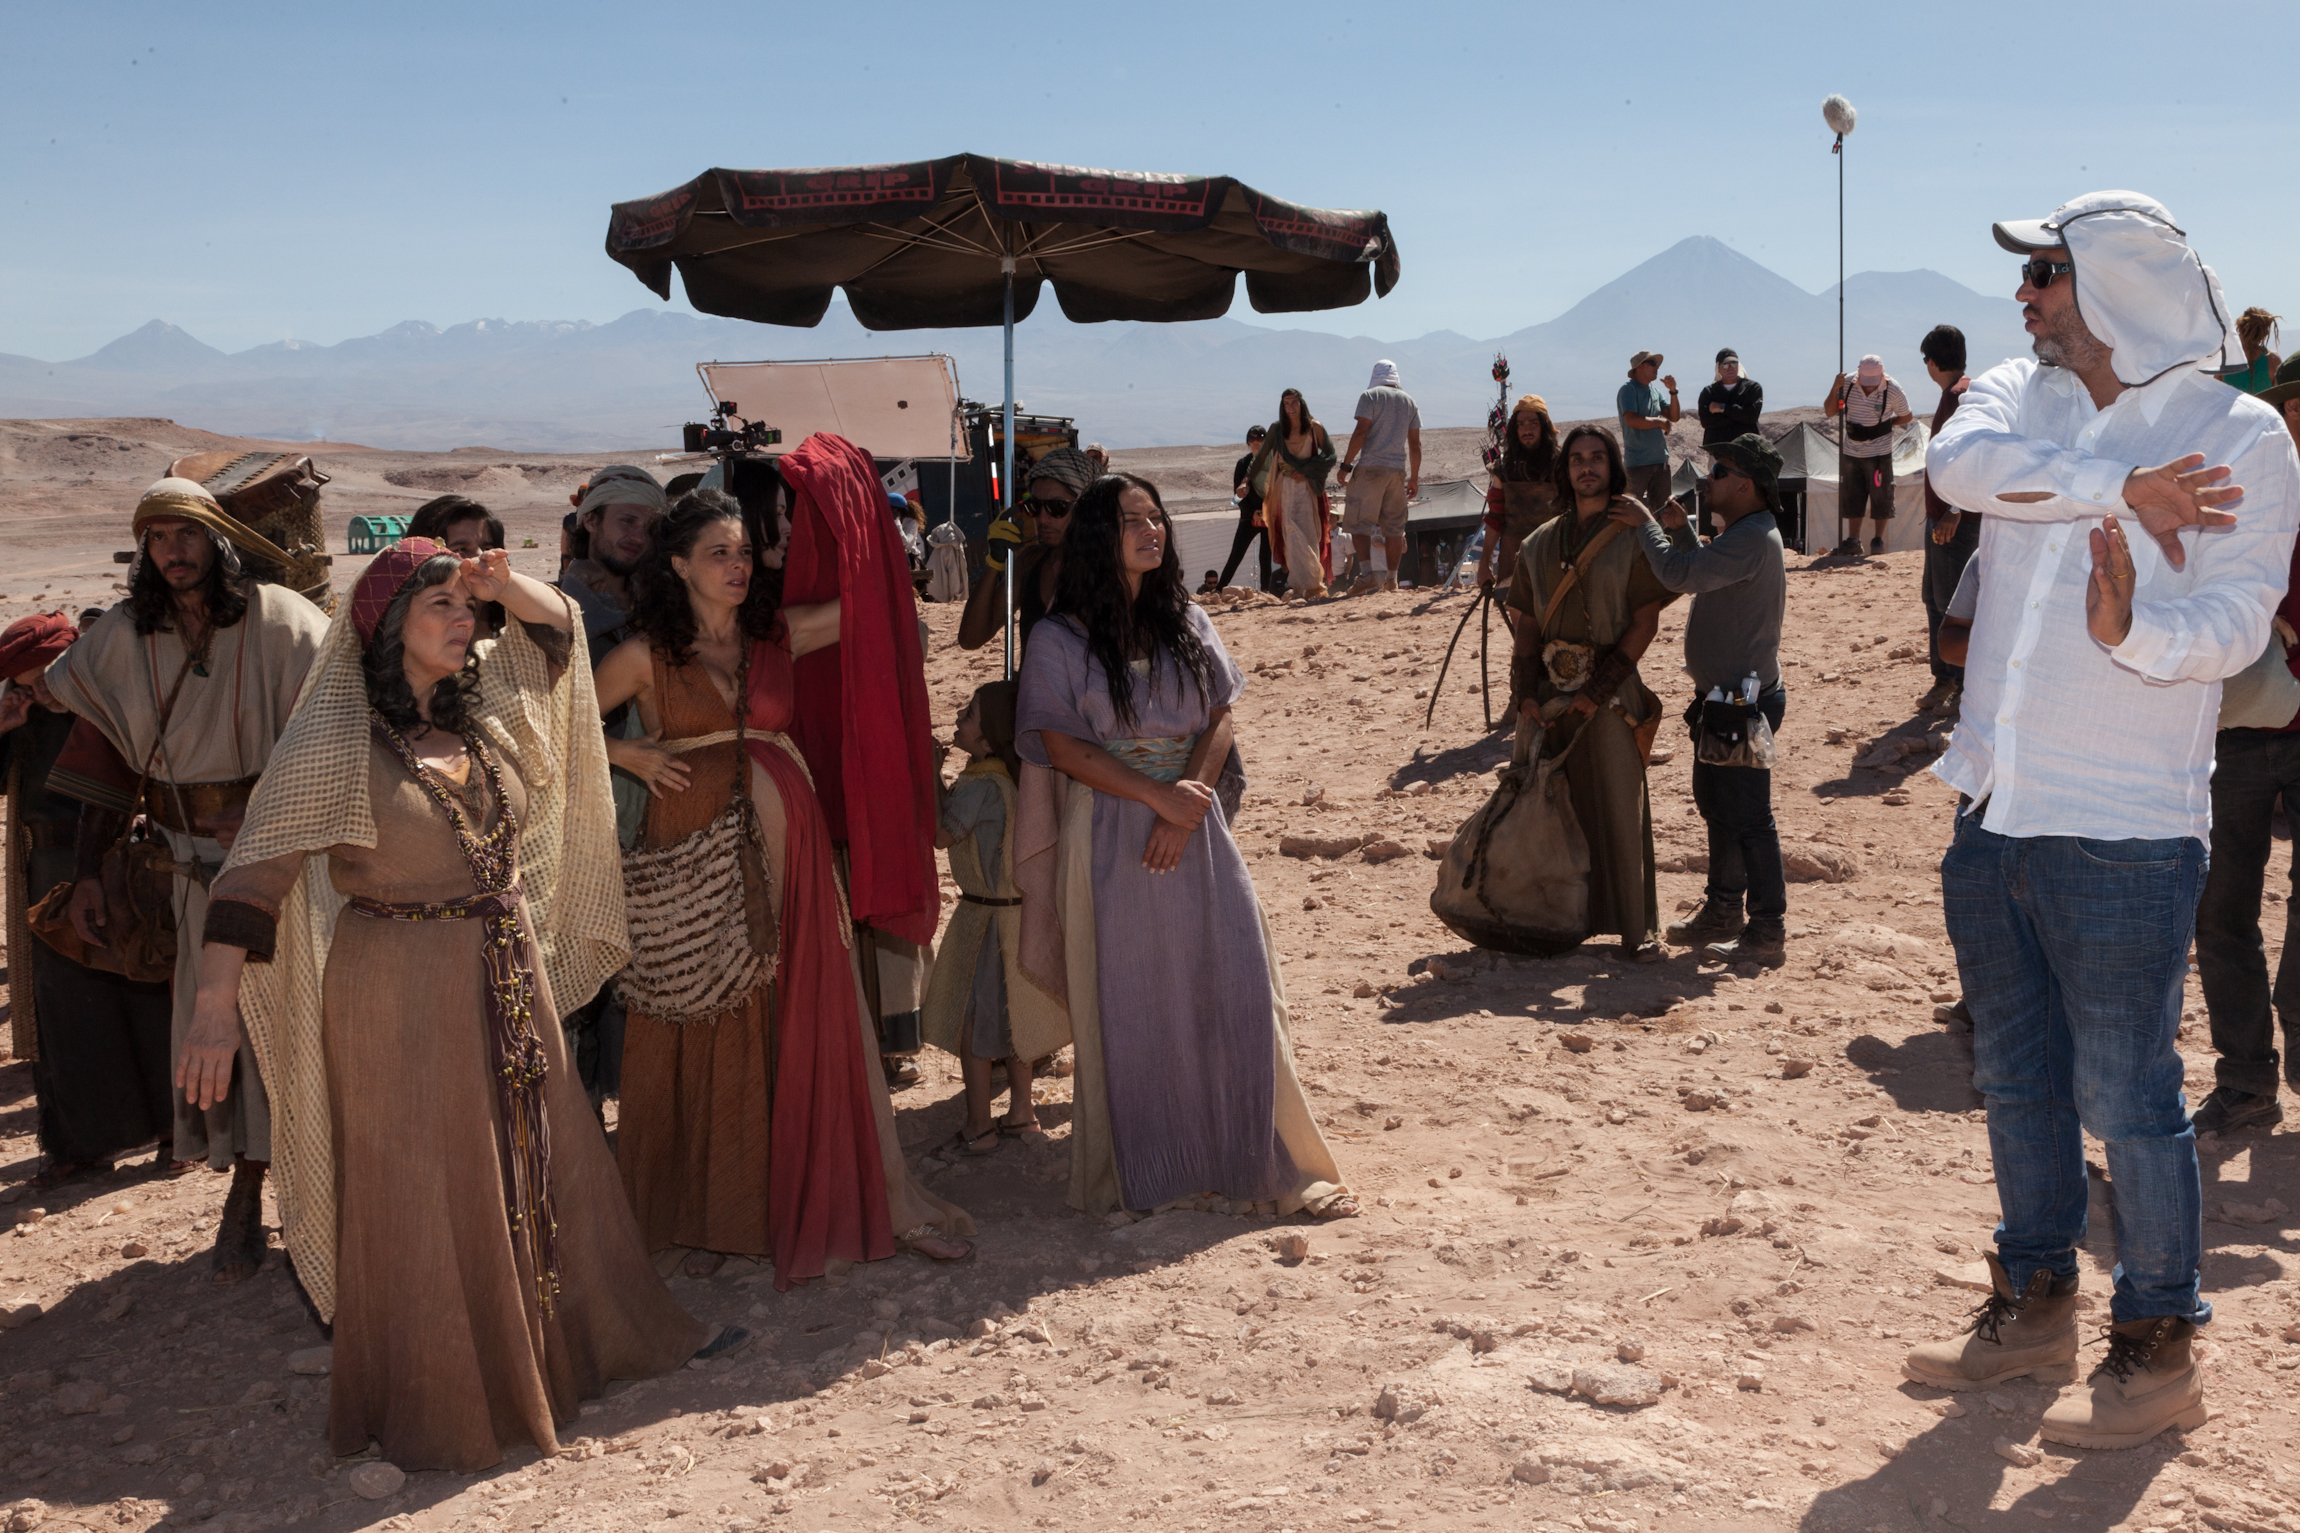 Alexandre Avancini, Denise Del Vecchio, Milla Christie and Carla Regina in Atacama Desert, Chile, for Jose do Egito (TV series 2013).